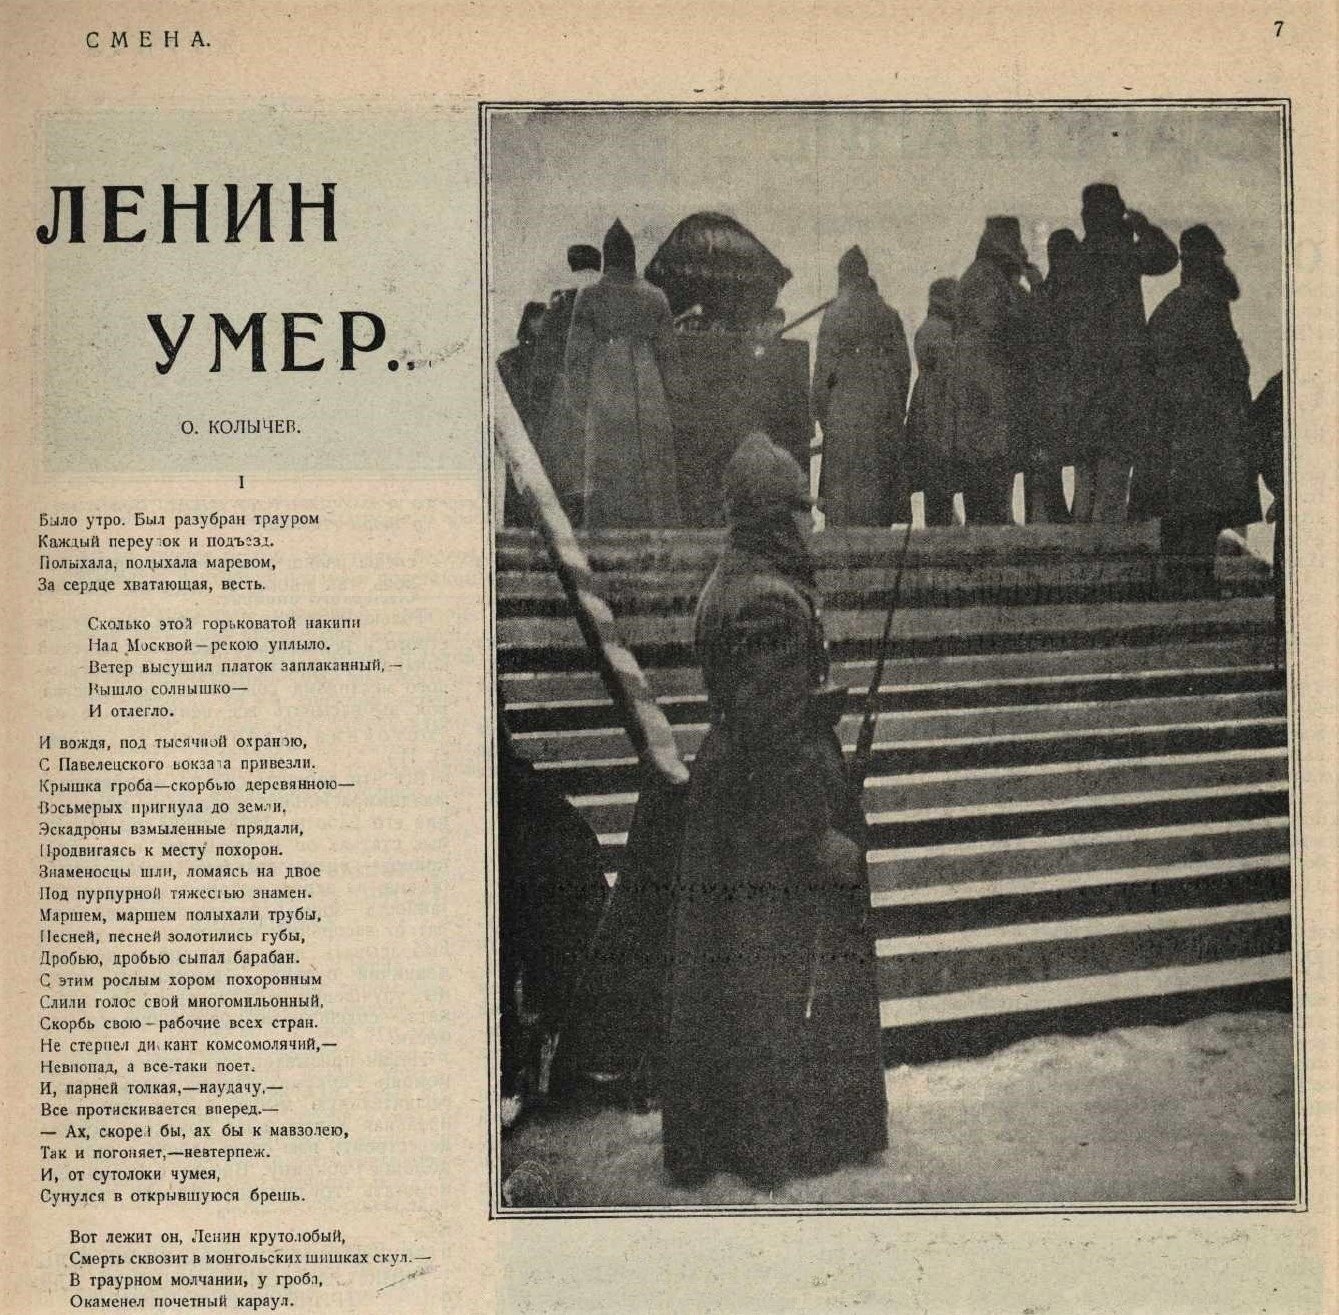 21 Января 1924 года смерть Ленина.